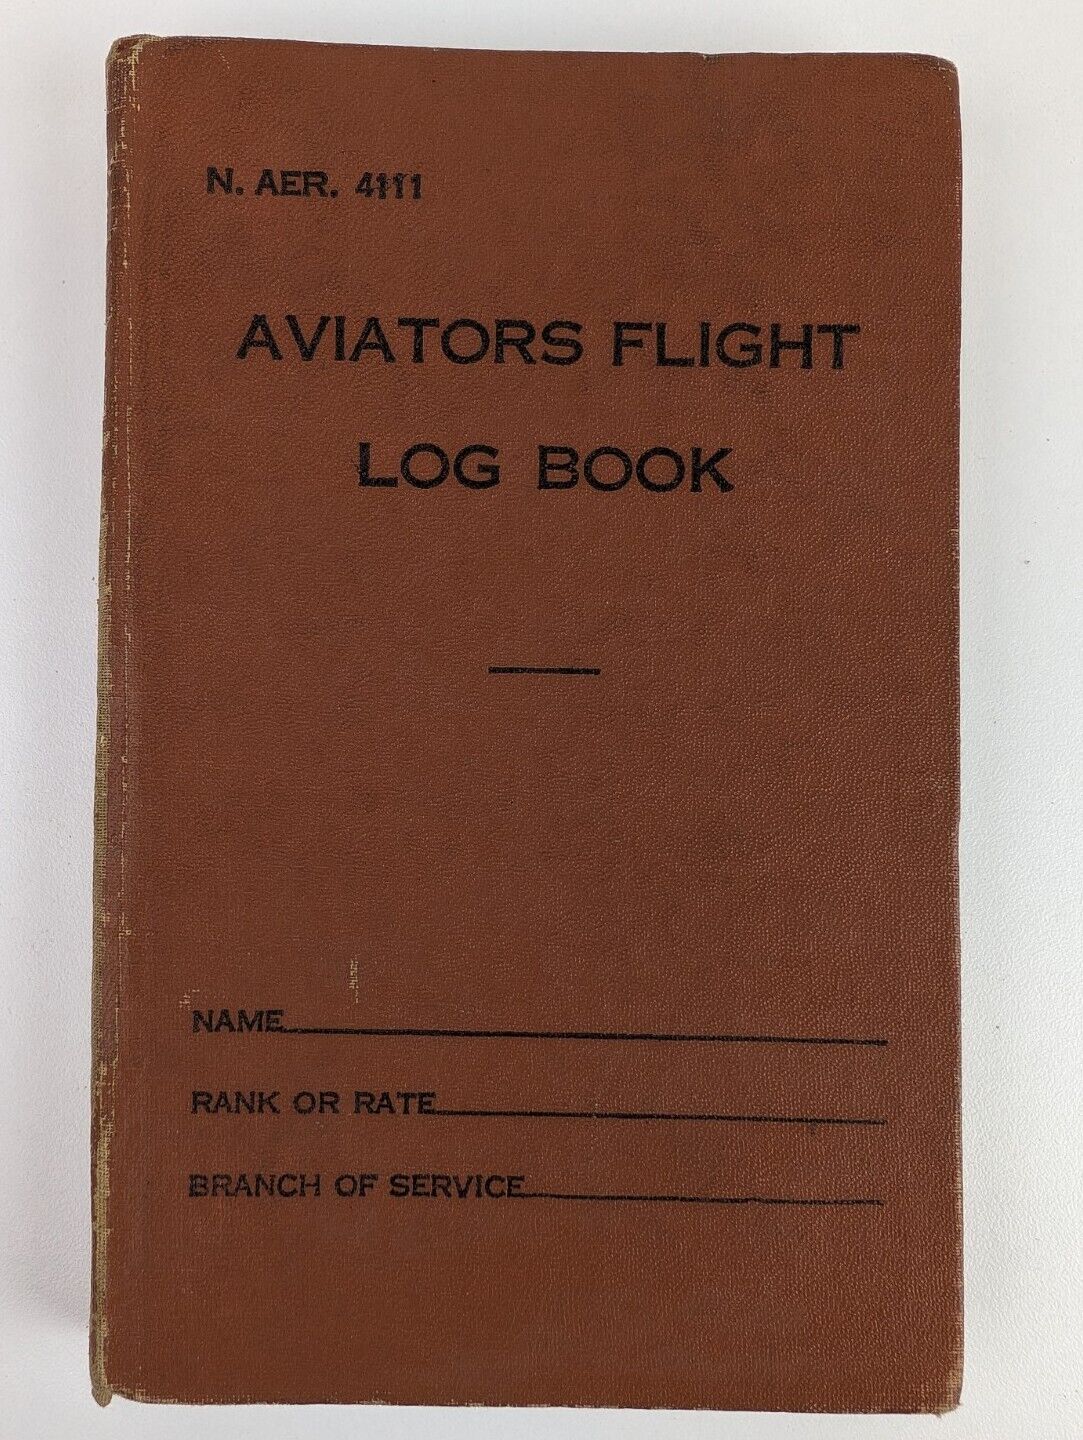 Original Antique 1940s WW2 Navy Aviators Flight Log Book Rare